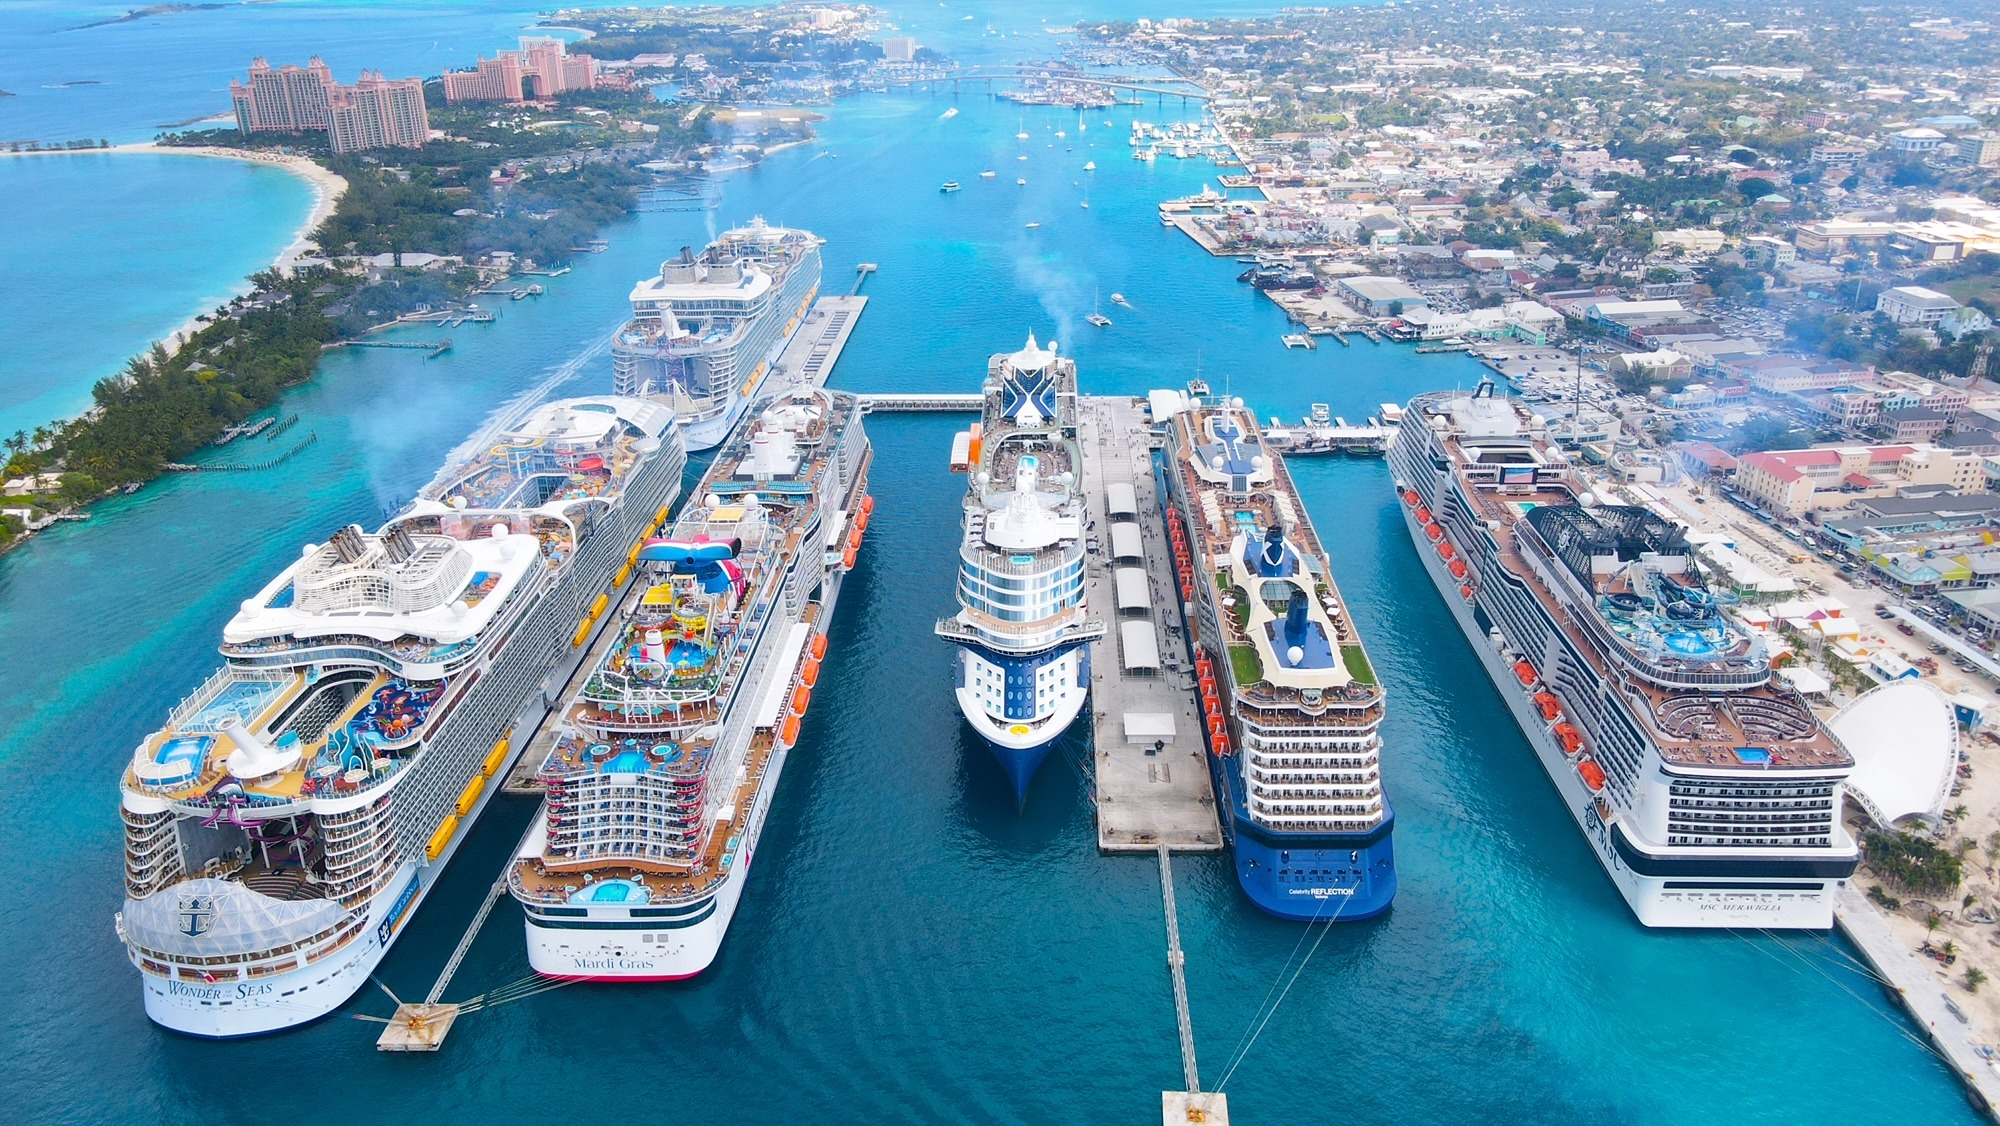 Nassau Cruise Port Sets New Single Day Record Porthole Cruise and